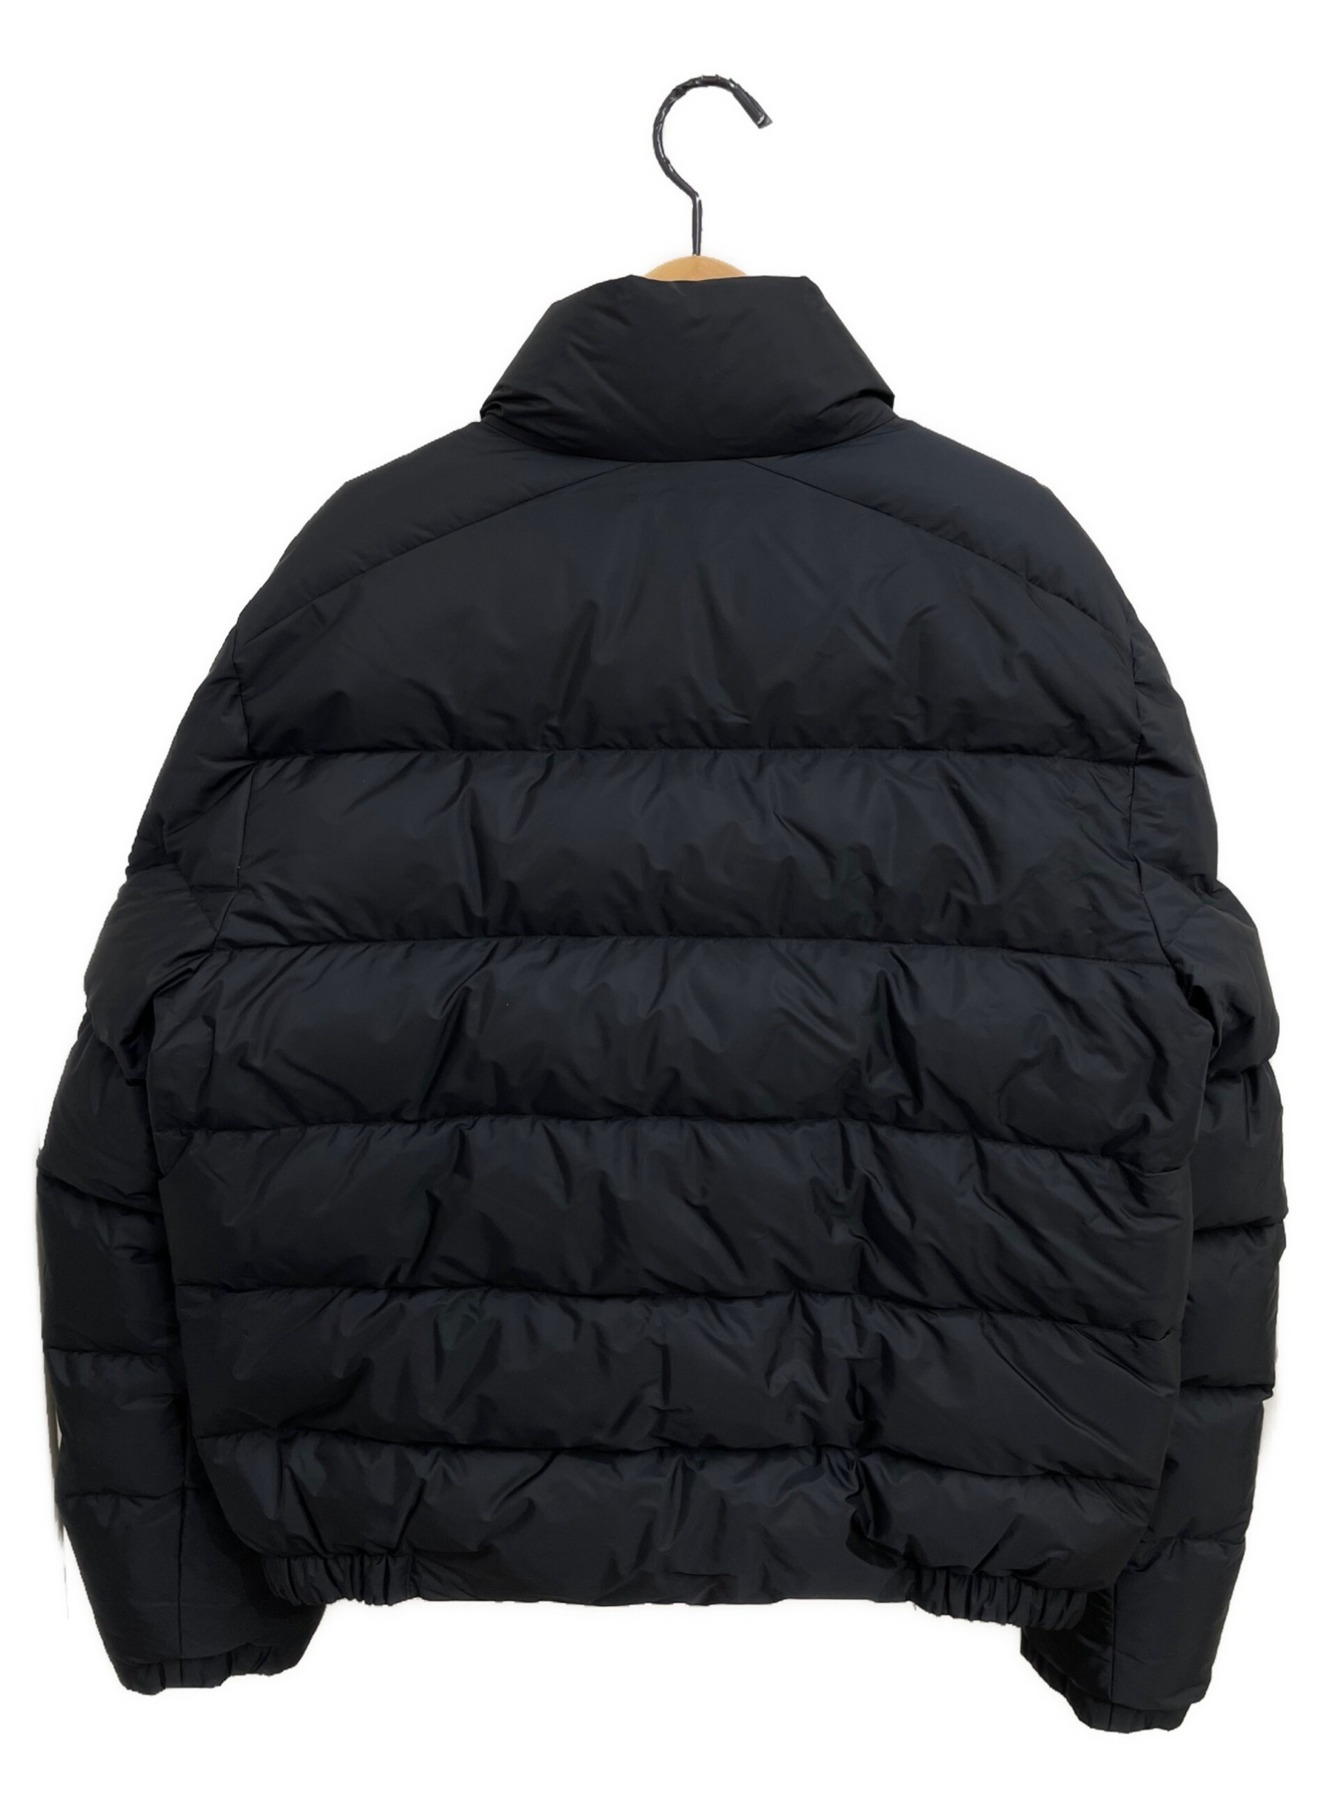 PRADA (プラダ) ロゴプレートダウンジャケット ブラック サイズ:46